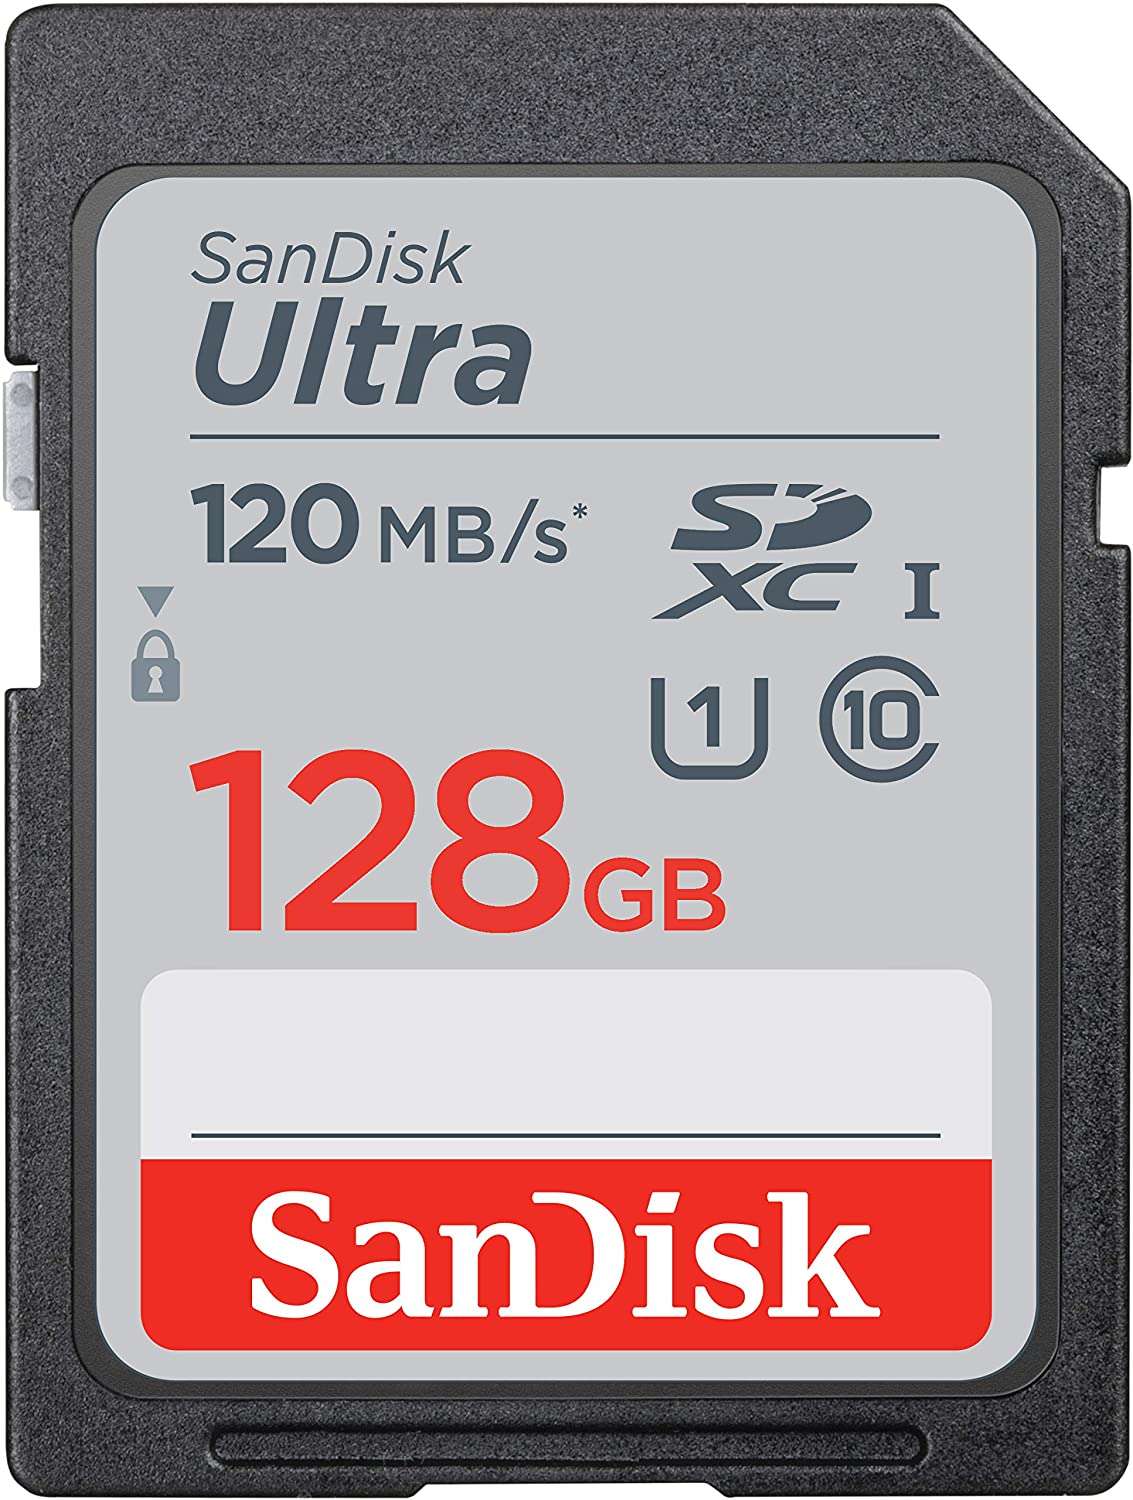 SanDisk Ultra SD